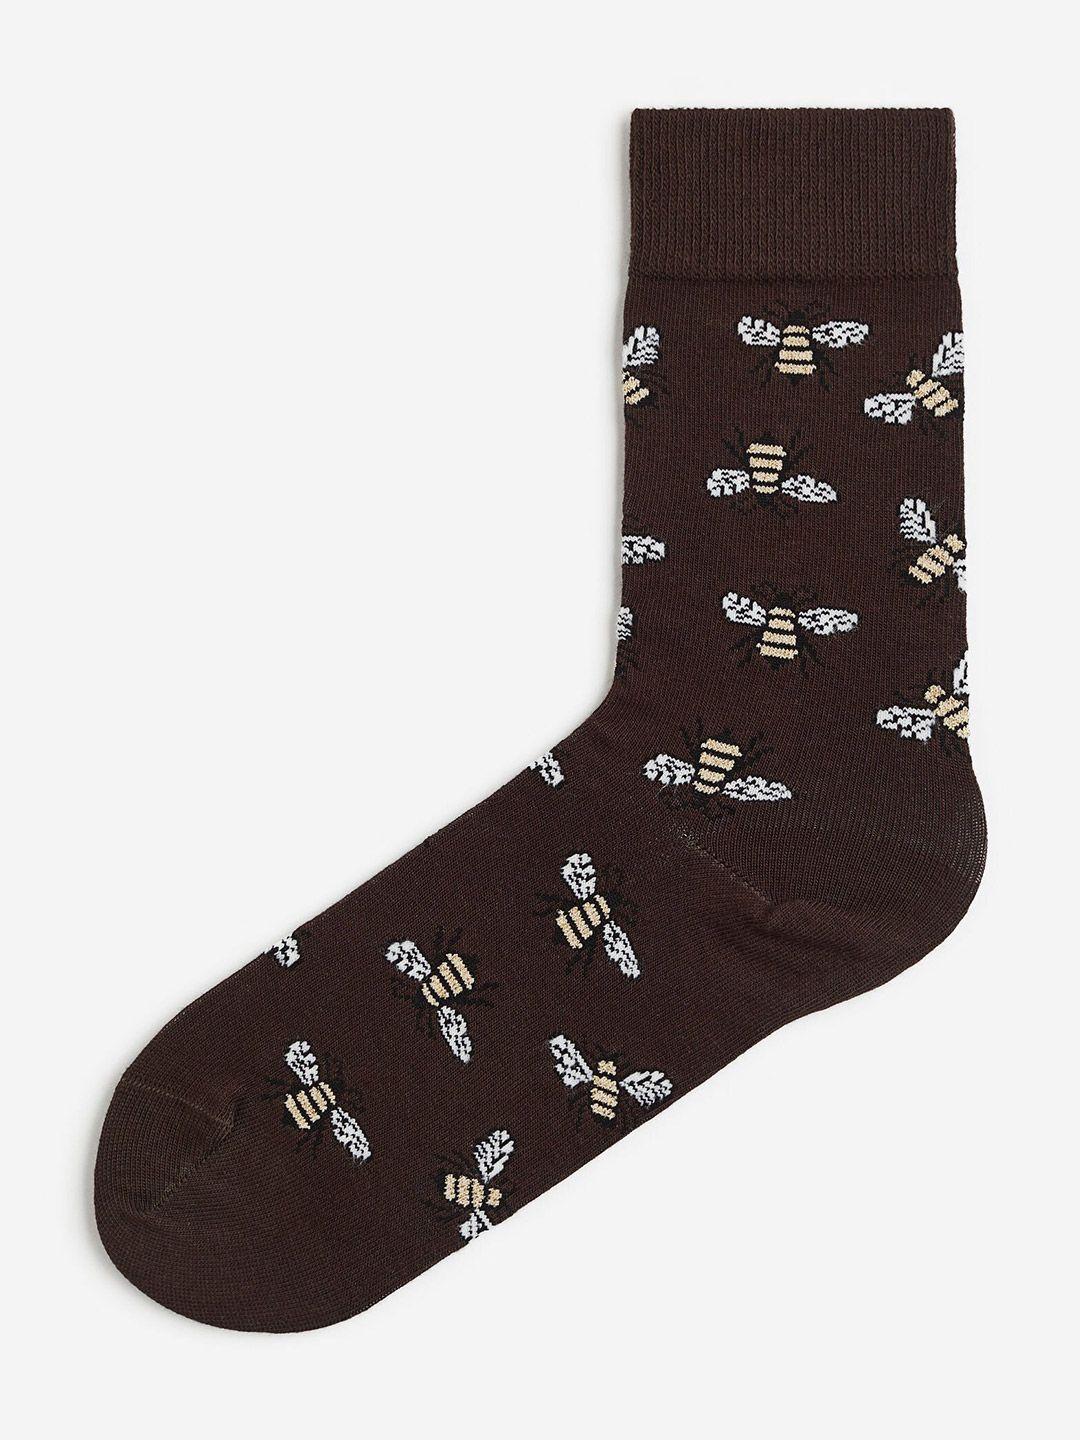 h&m men patterned socks